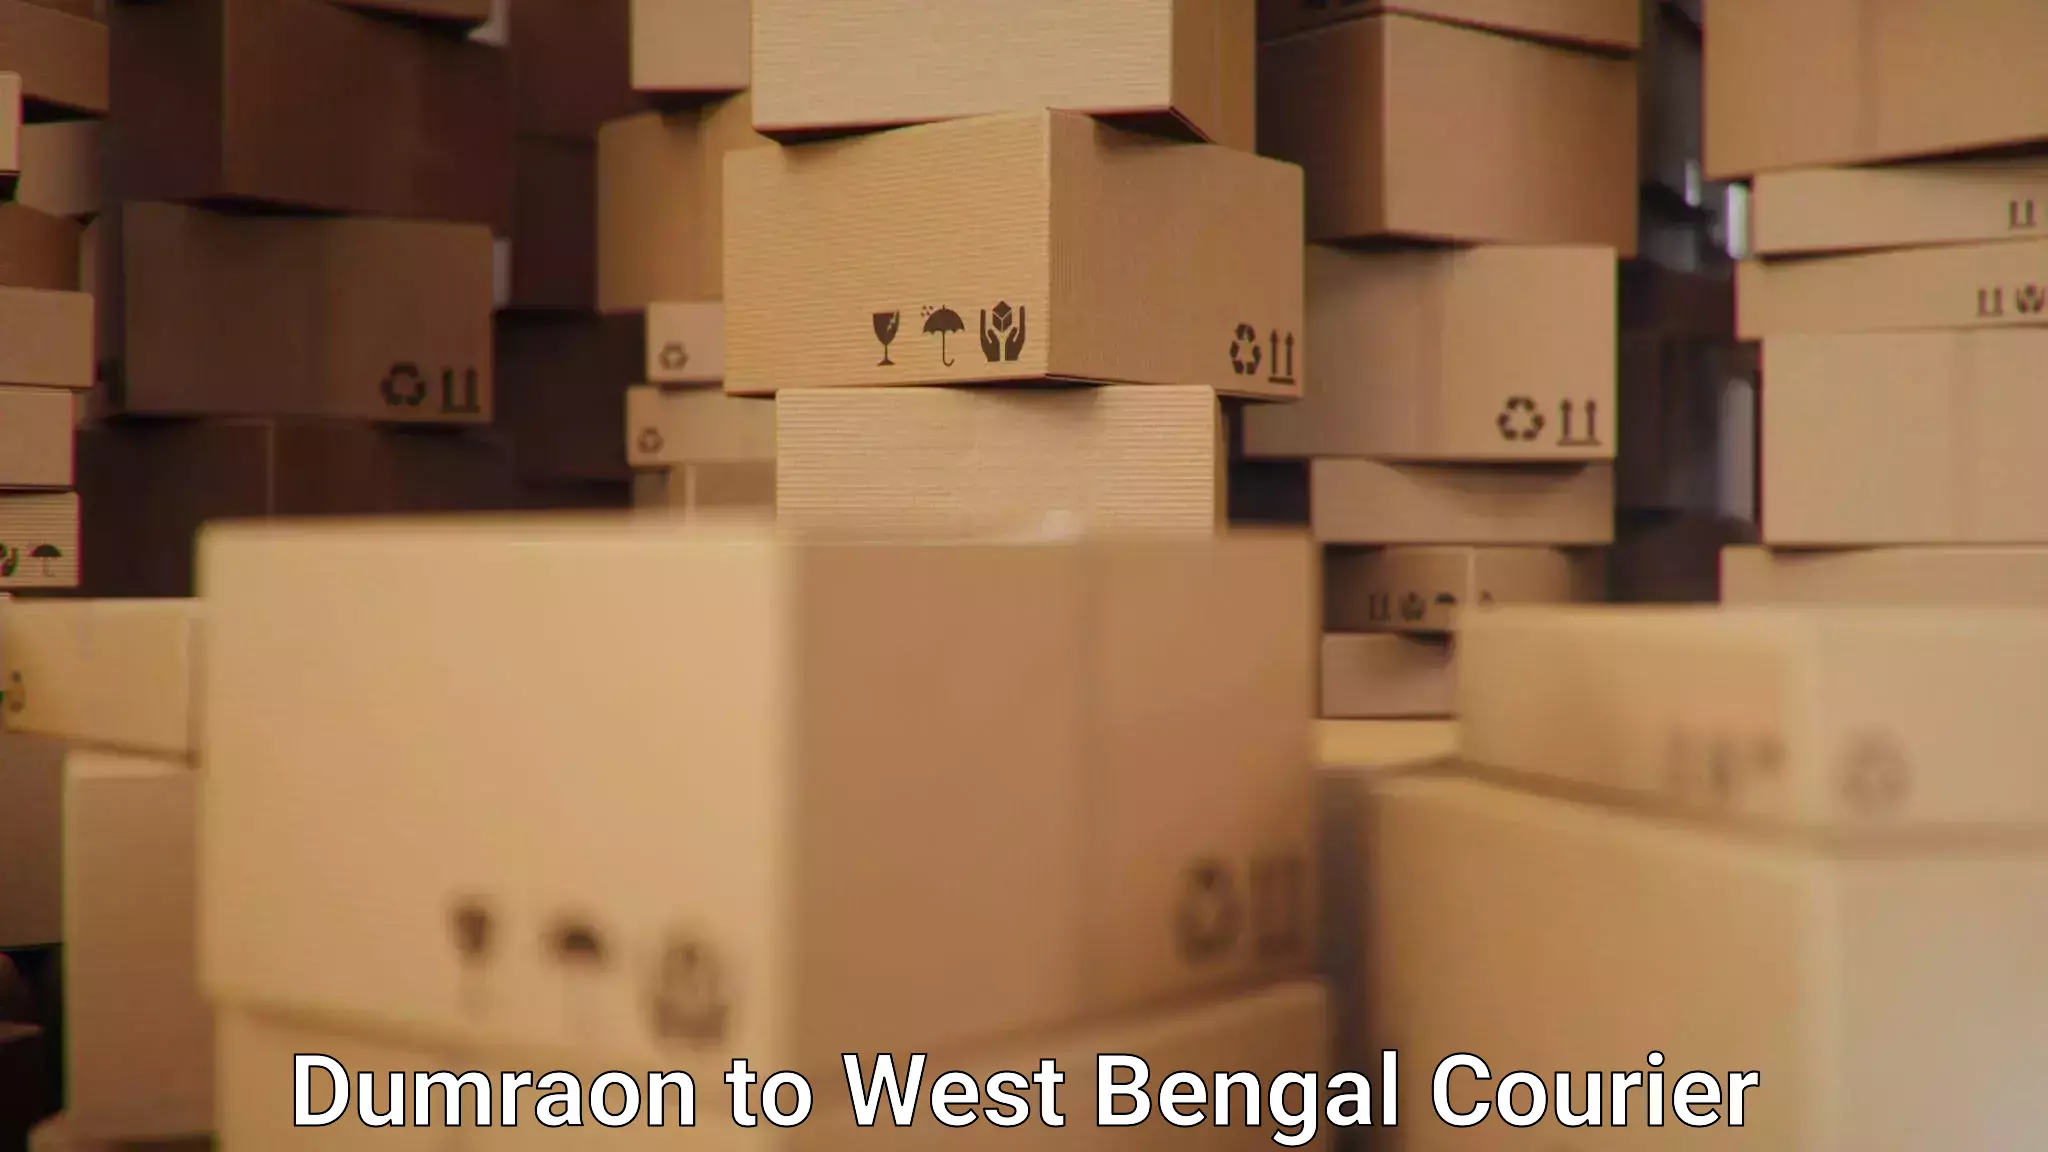 Courier service comparison Dumraon to West Bengal